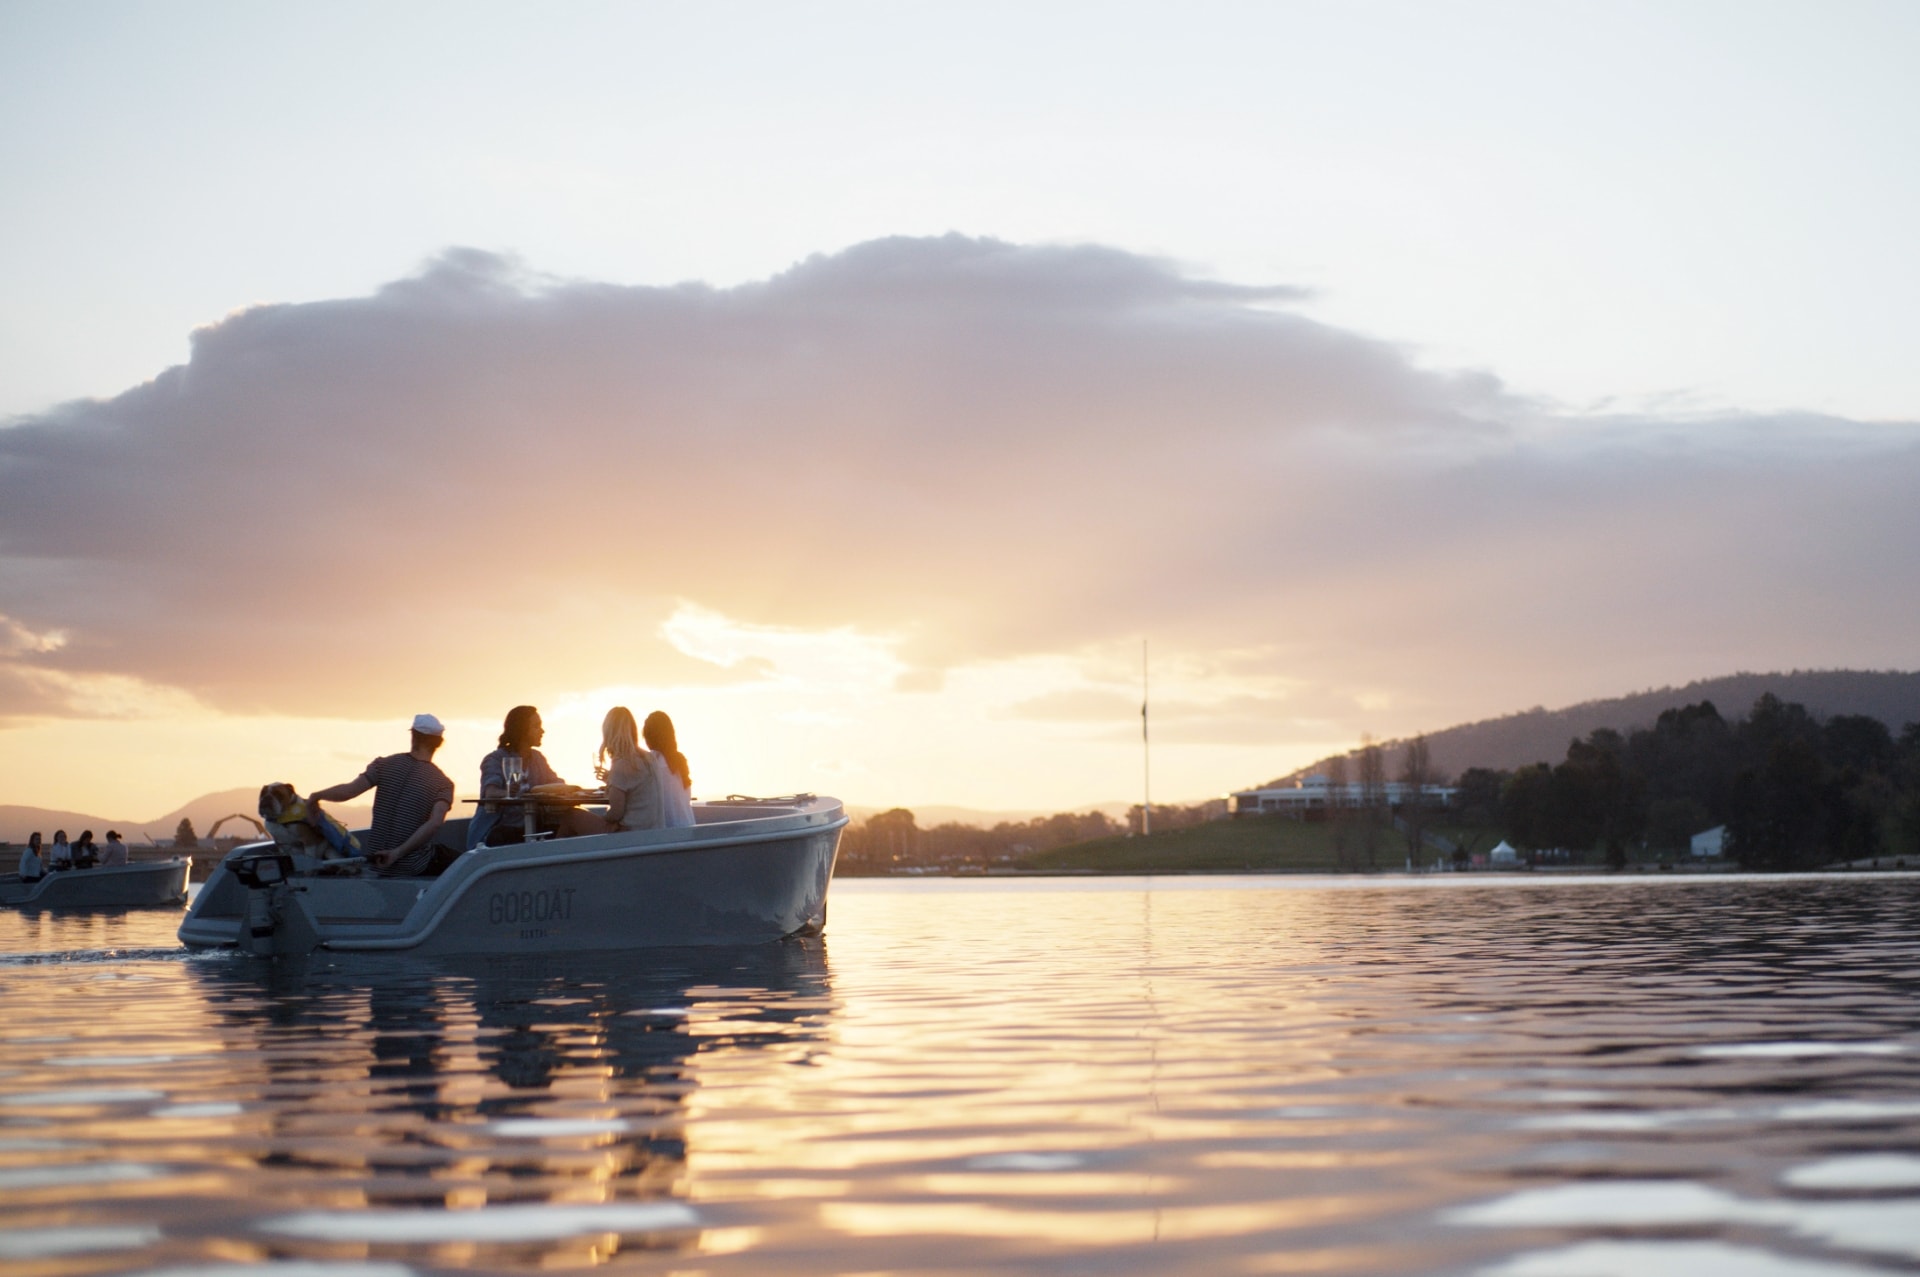  オーストラリア首都特別地域、バーリー・グリフィン湖、ゴーボート © VisitCanberra